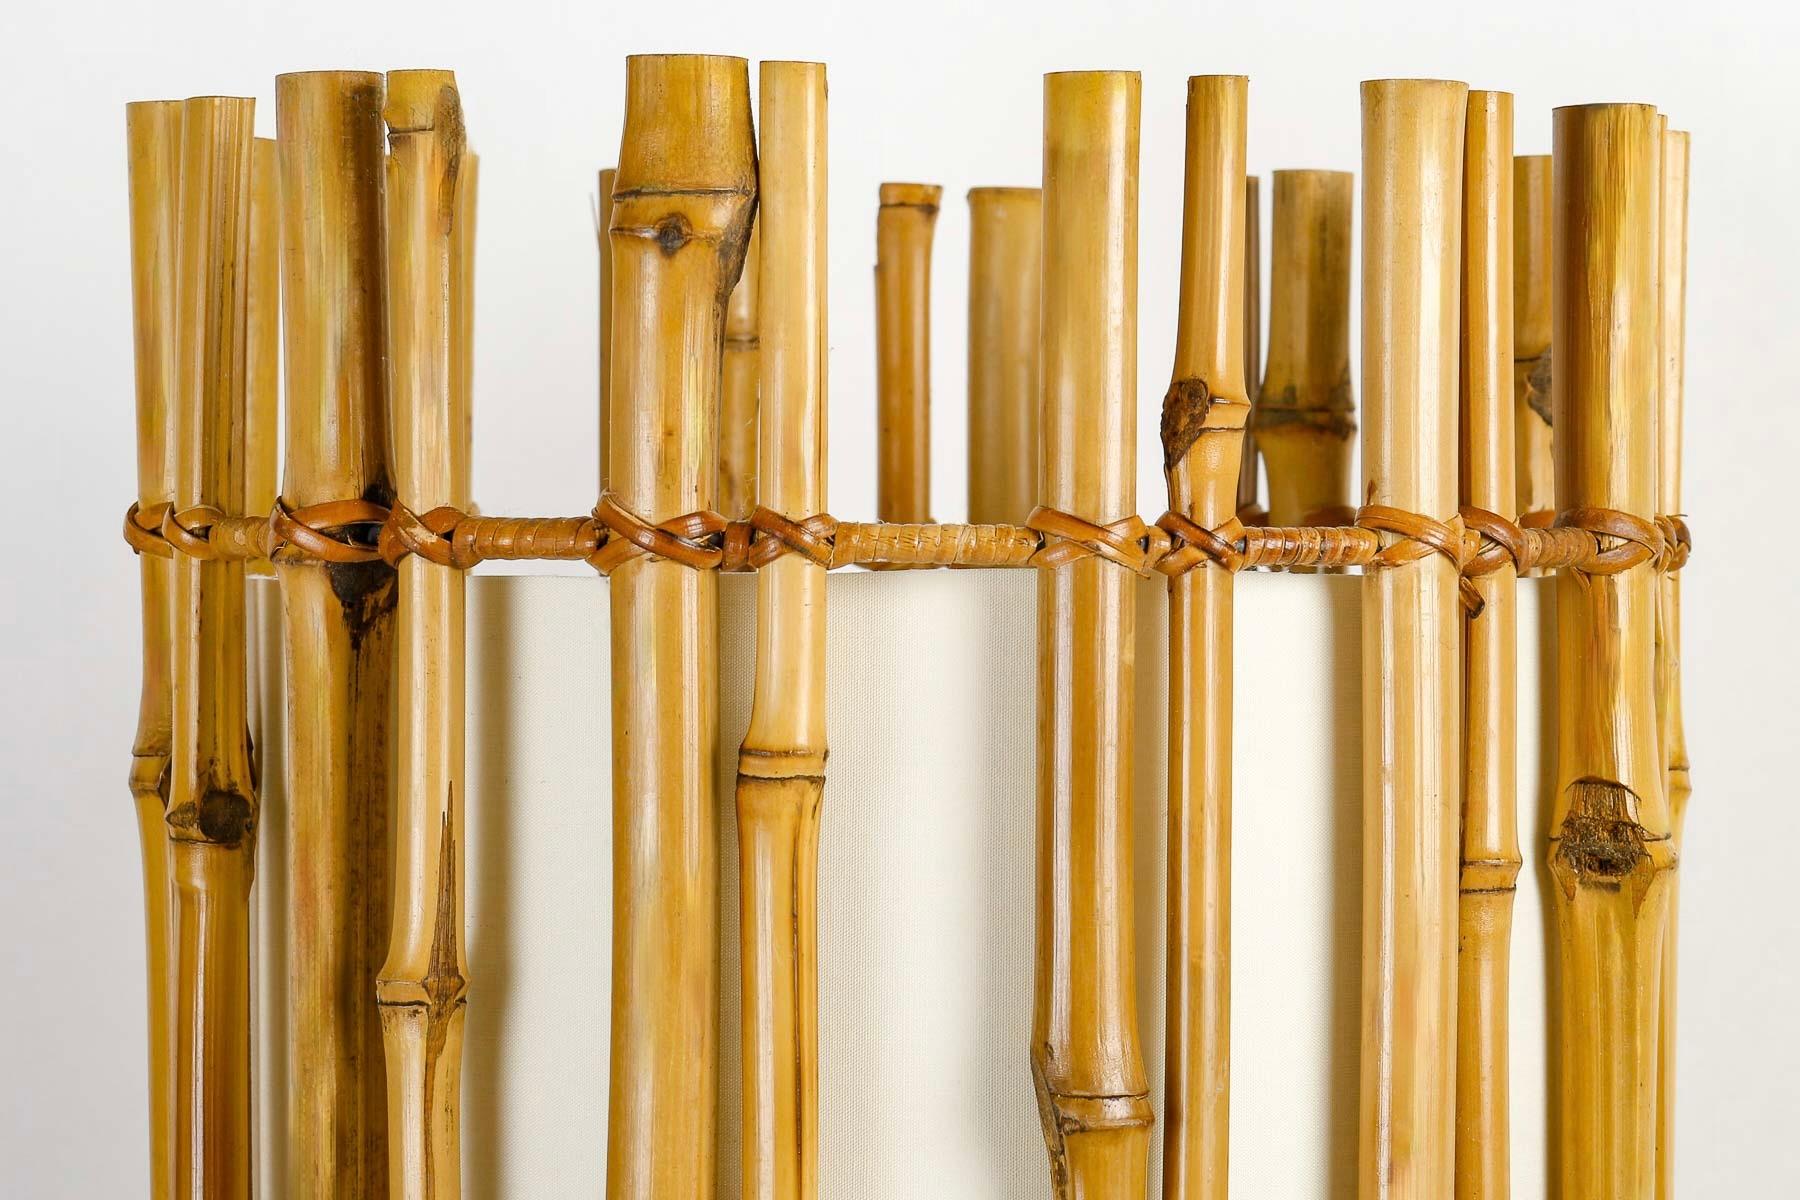 Composé d'un cylindre de tiges de bambou positionnées verticalement et maintenues par 3 cercles recouverts de fil de rotin à 3 hauteurs différentes.
Le cylindre en bambou est doublé d'un abat-jour blanc cassé placé à l'intérieur, mettant en valeur